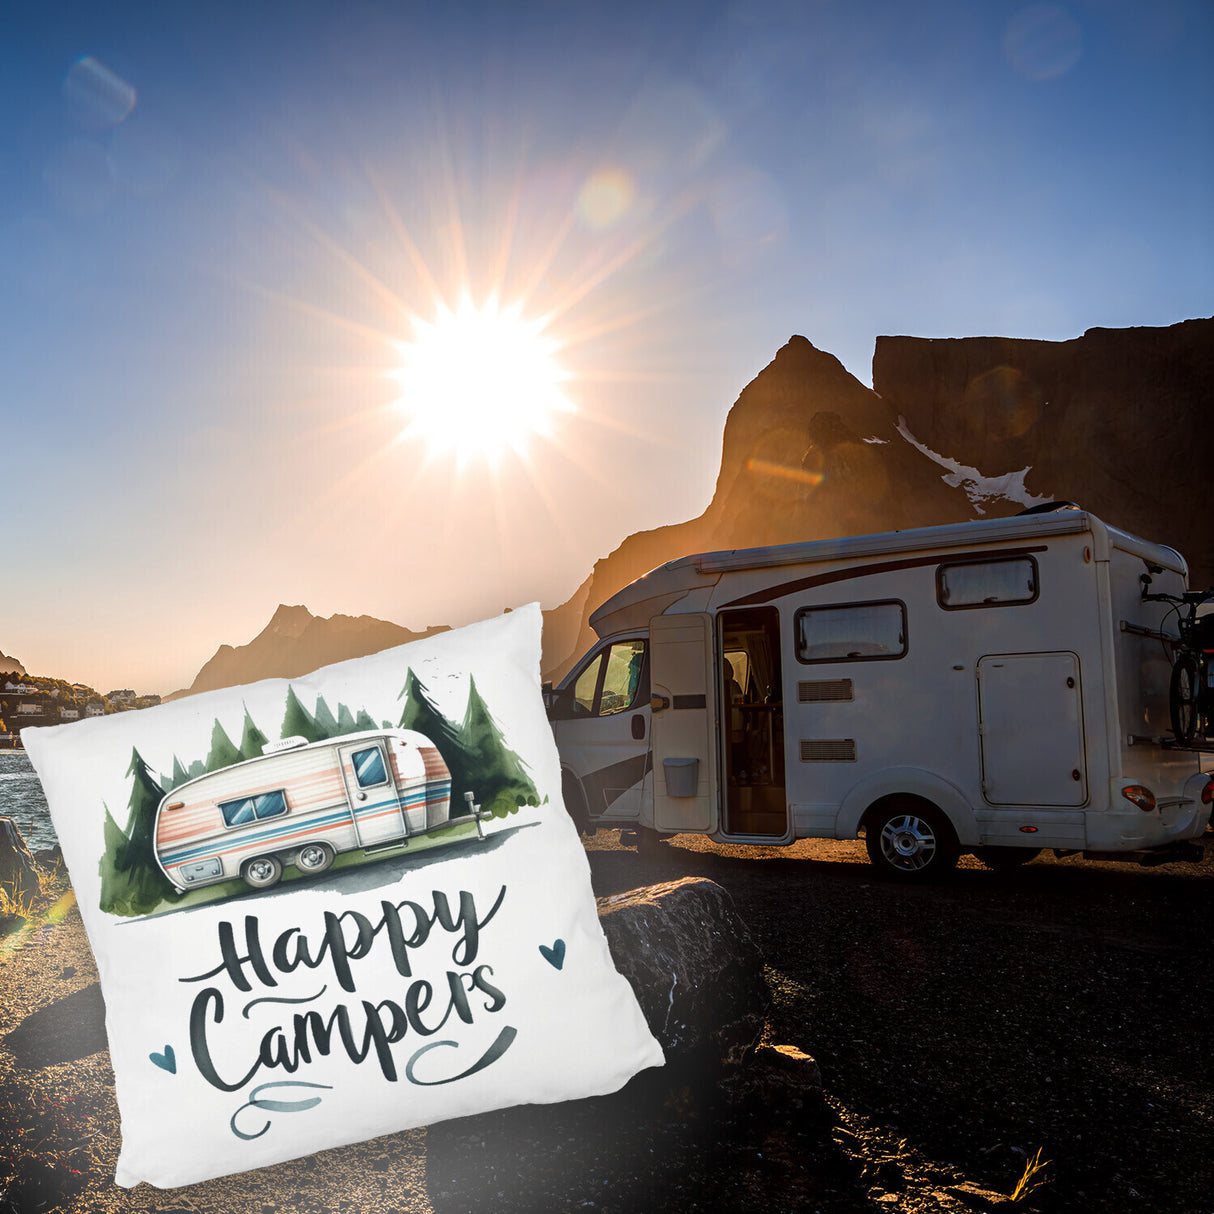 Happy Campers Wohnwagen Kissen